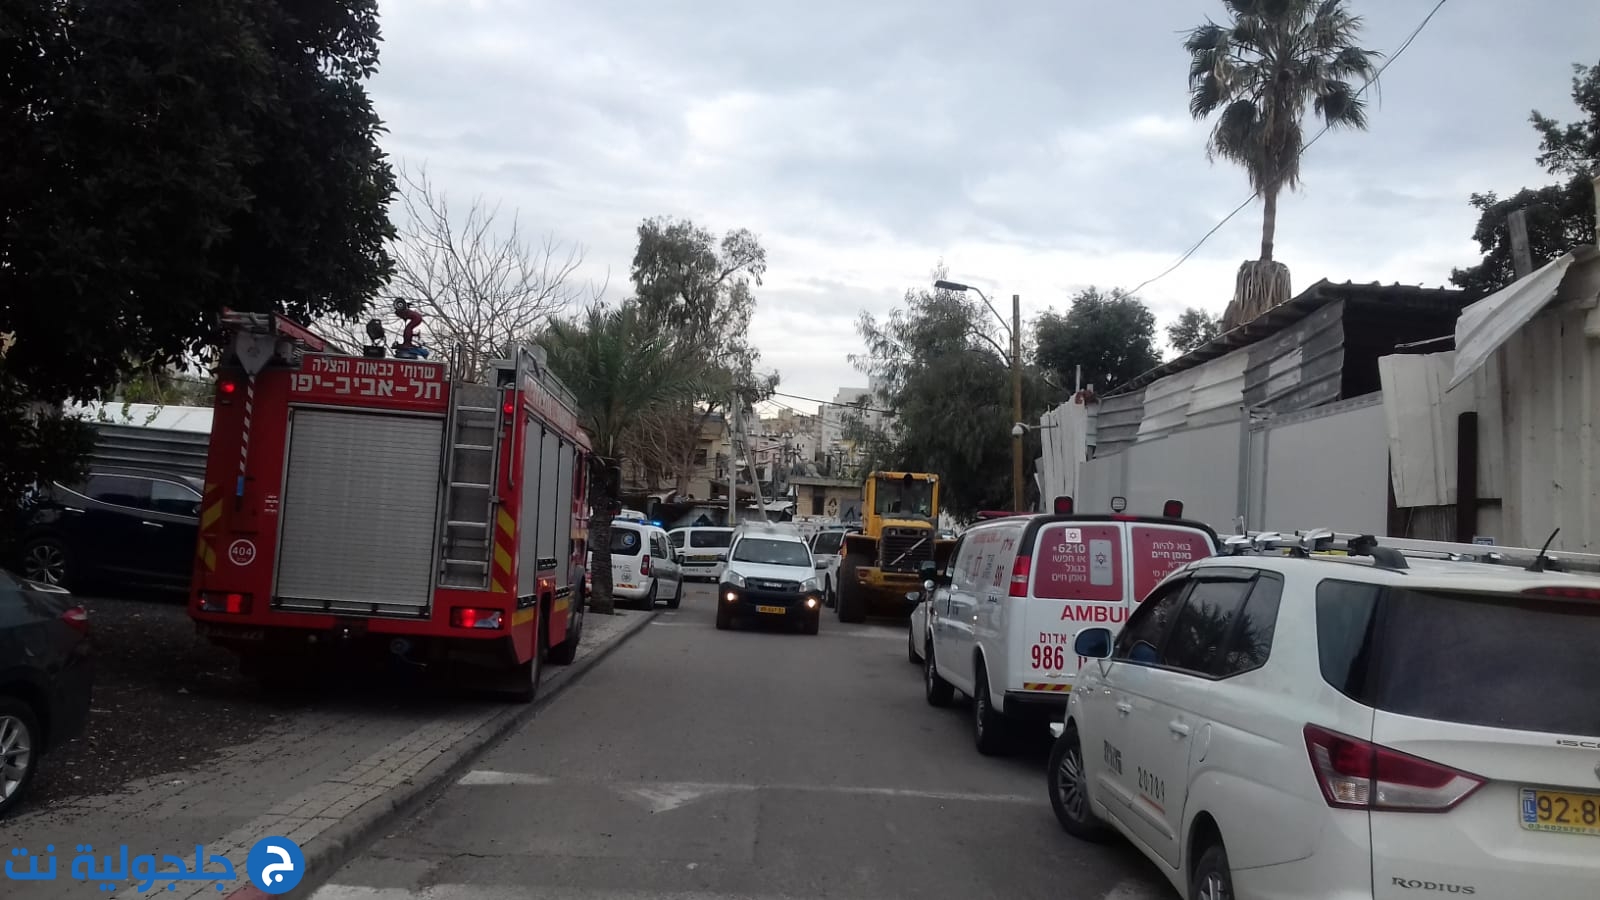 فيديو: الشرطة تداهم بيارة دكة في مدينة يافا بشكل وحشي